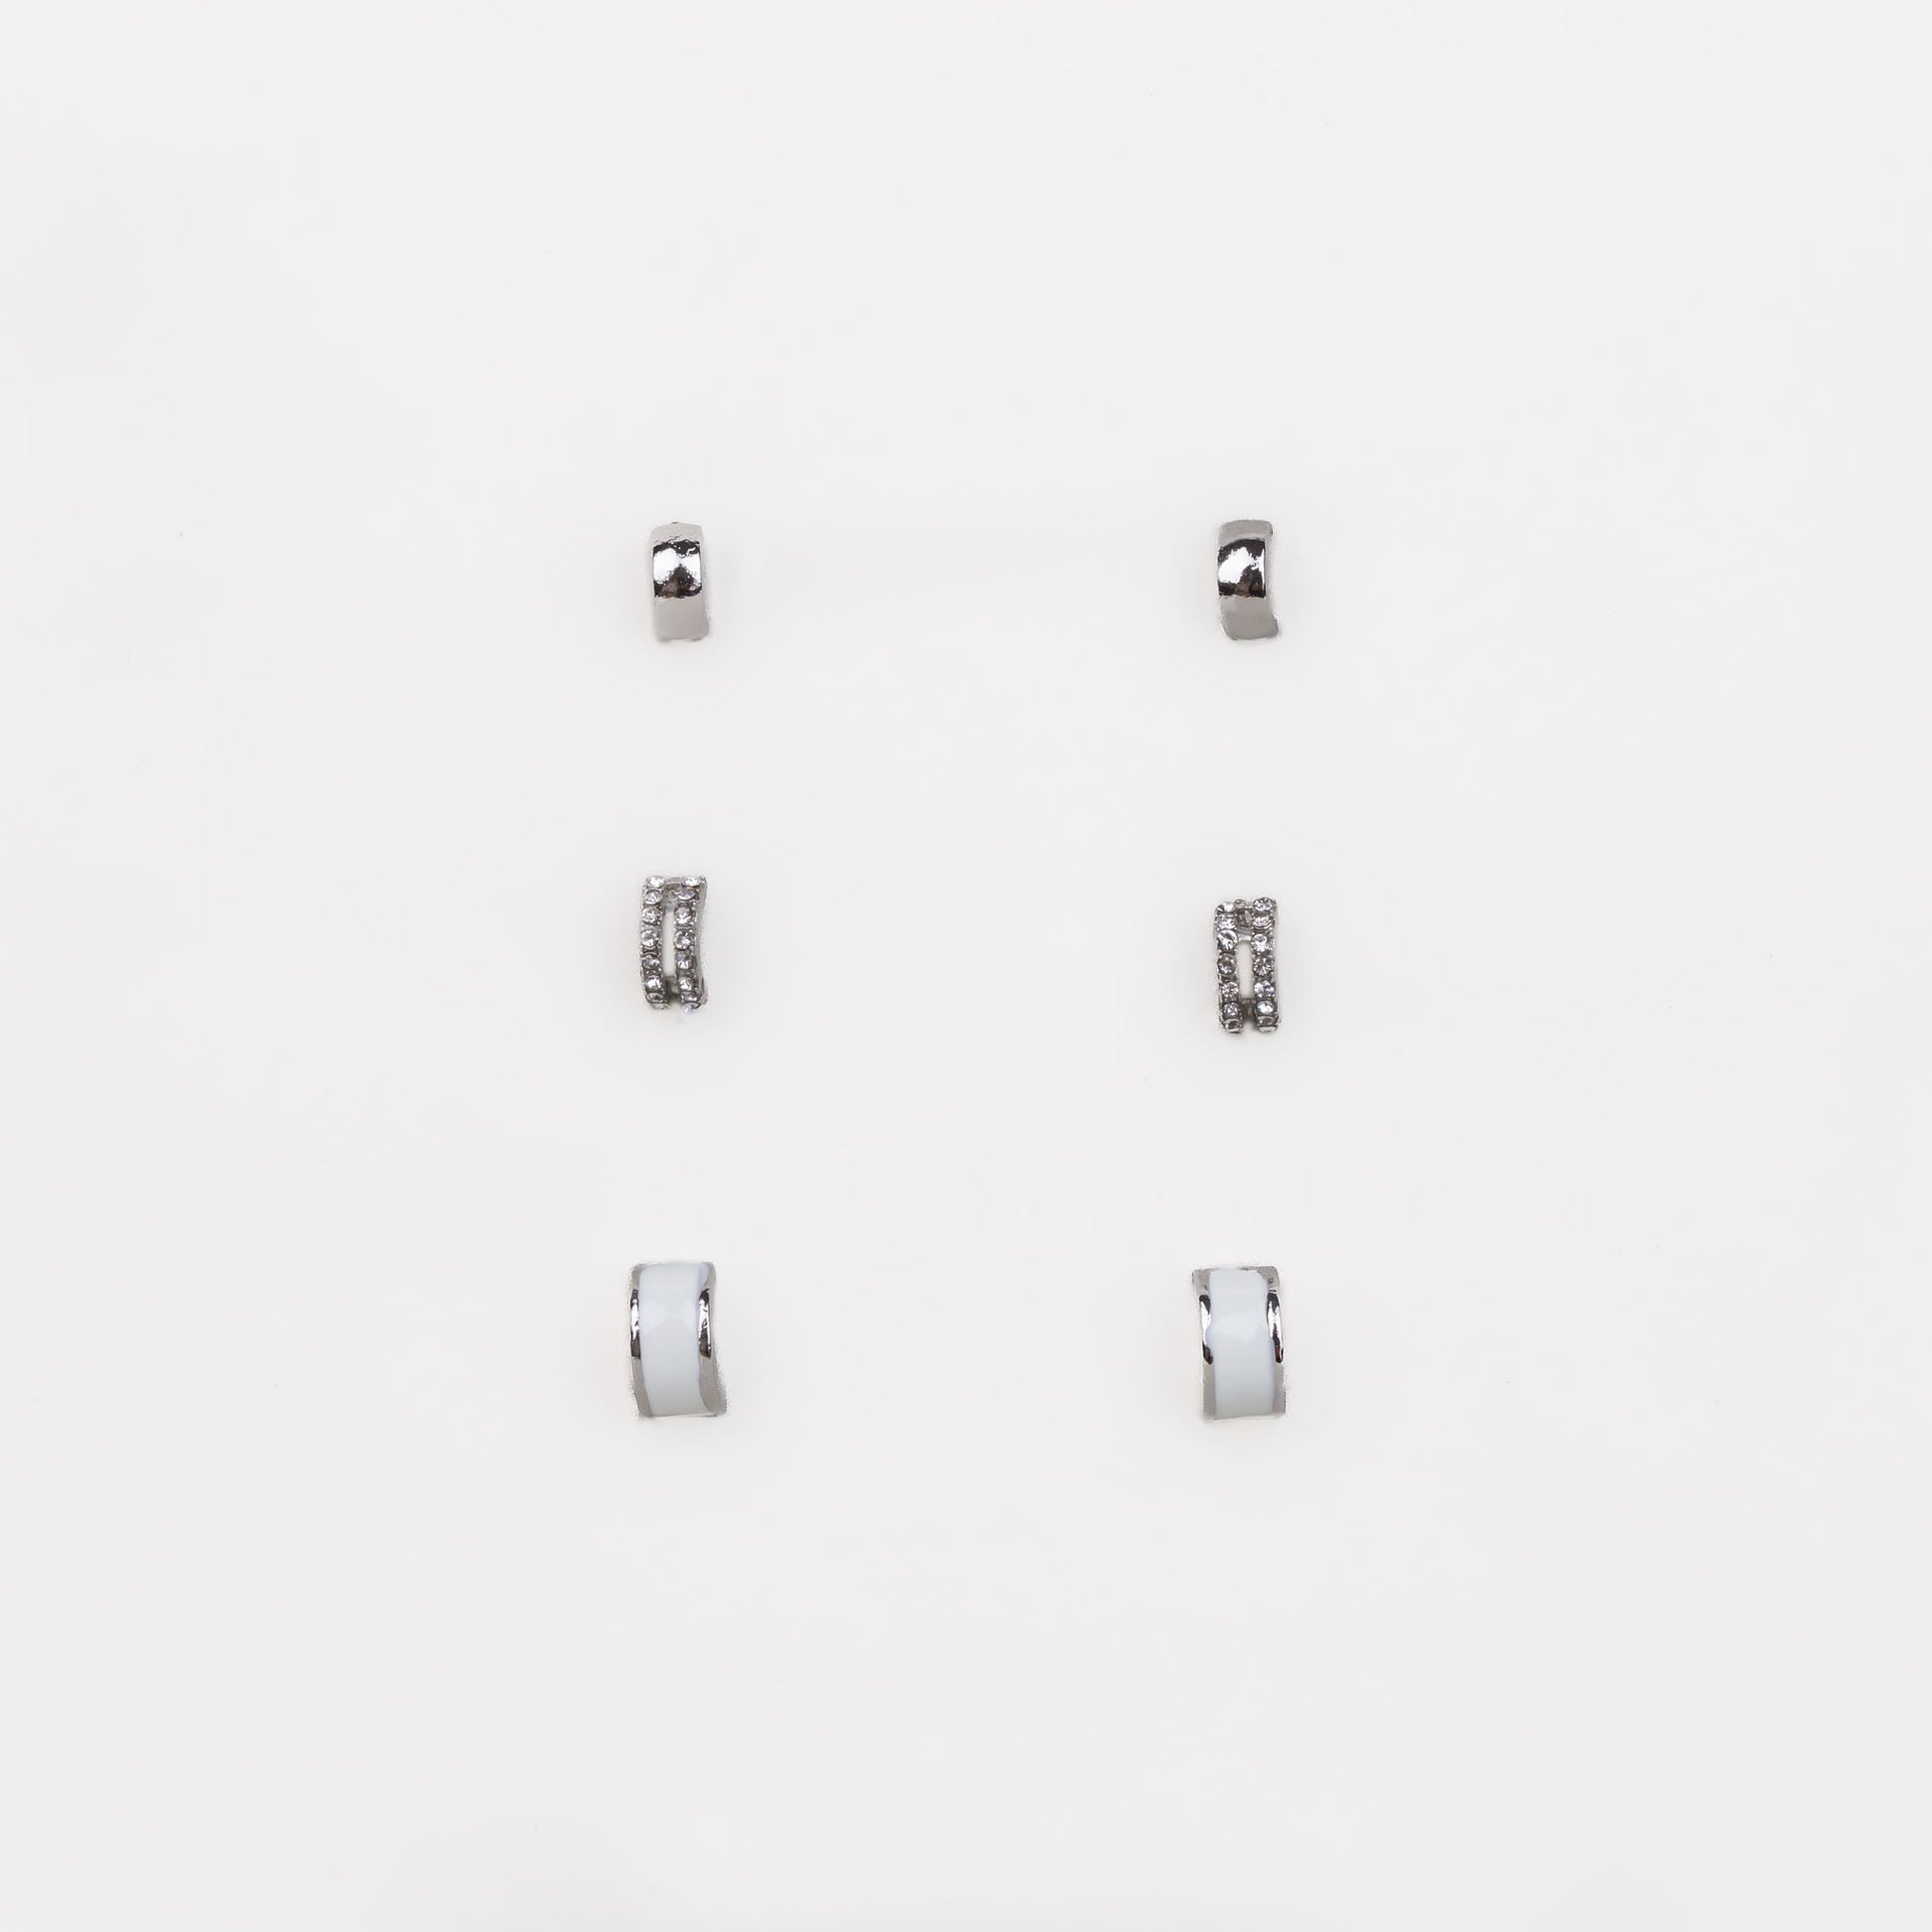 Cercei mici discreți semirotunzi cu ștrasuri, set 3 perechi - Argintiu, Alb